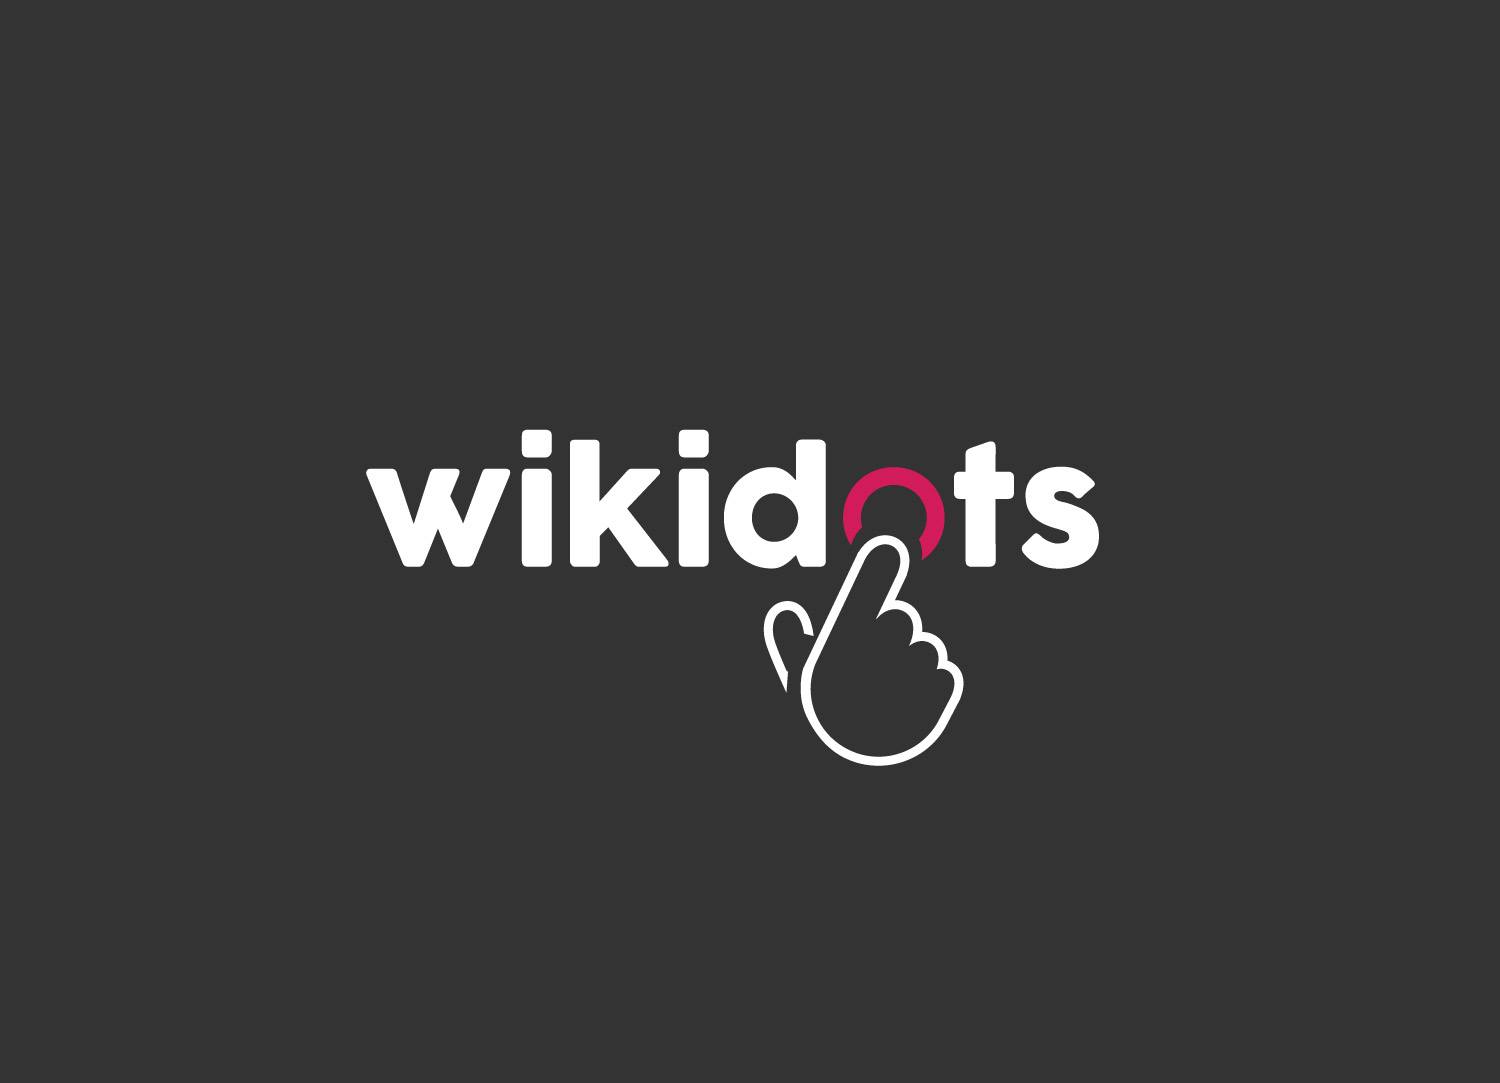 Wikidots logo